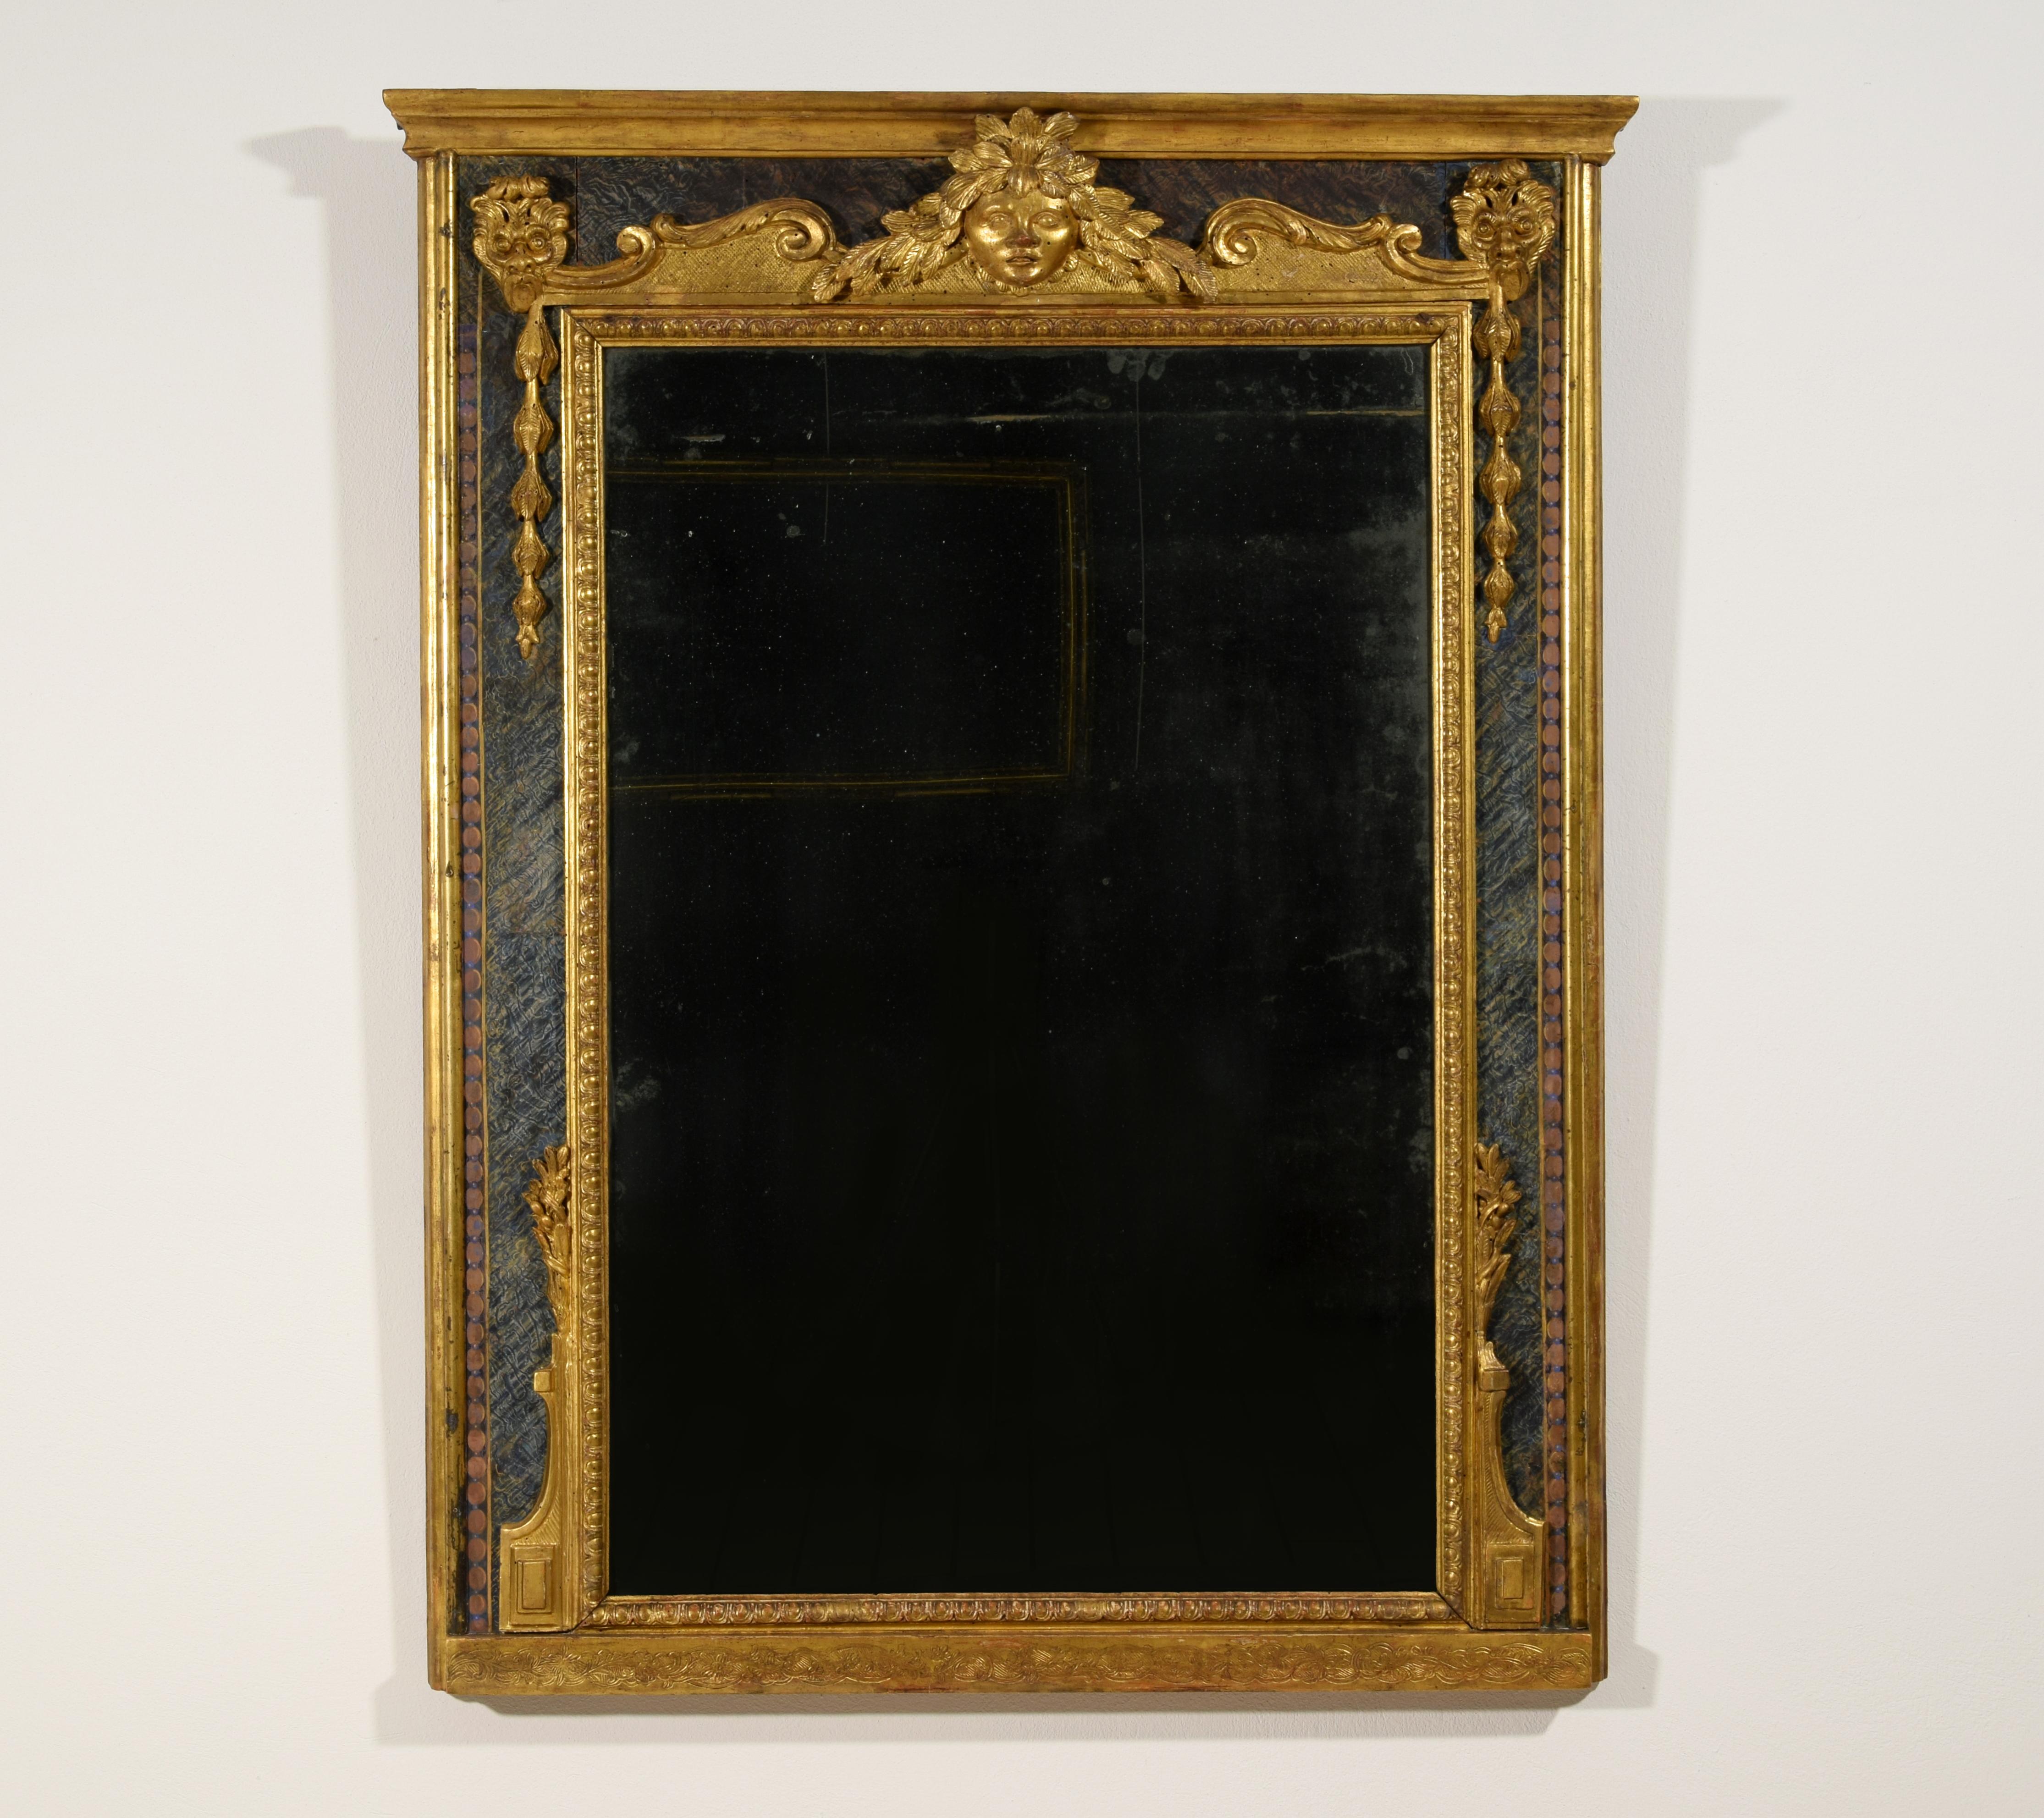 18. Jahrhundert, Italienischer Louis XIV Spiegel aus geschnitztem Giltwood
Der Barockspiegel, der in der ersten Hälfte des 18. Jahrhunderts in Italien hergestellt wurde, hat einen rechteckigen Rahmen aus geschnitztem und vergoldetem Holz. Der innere